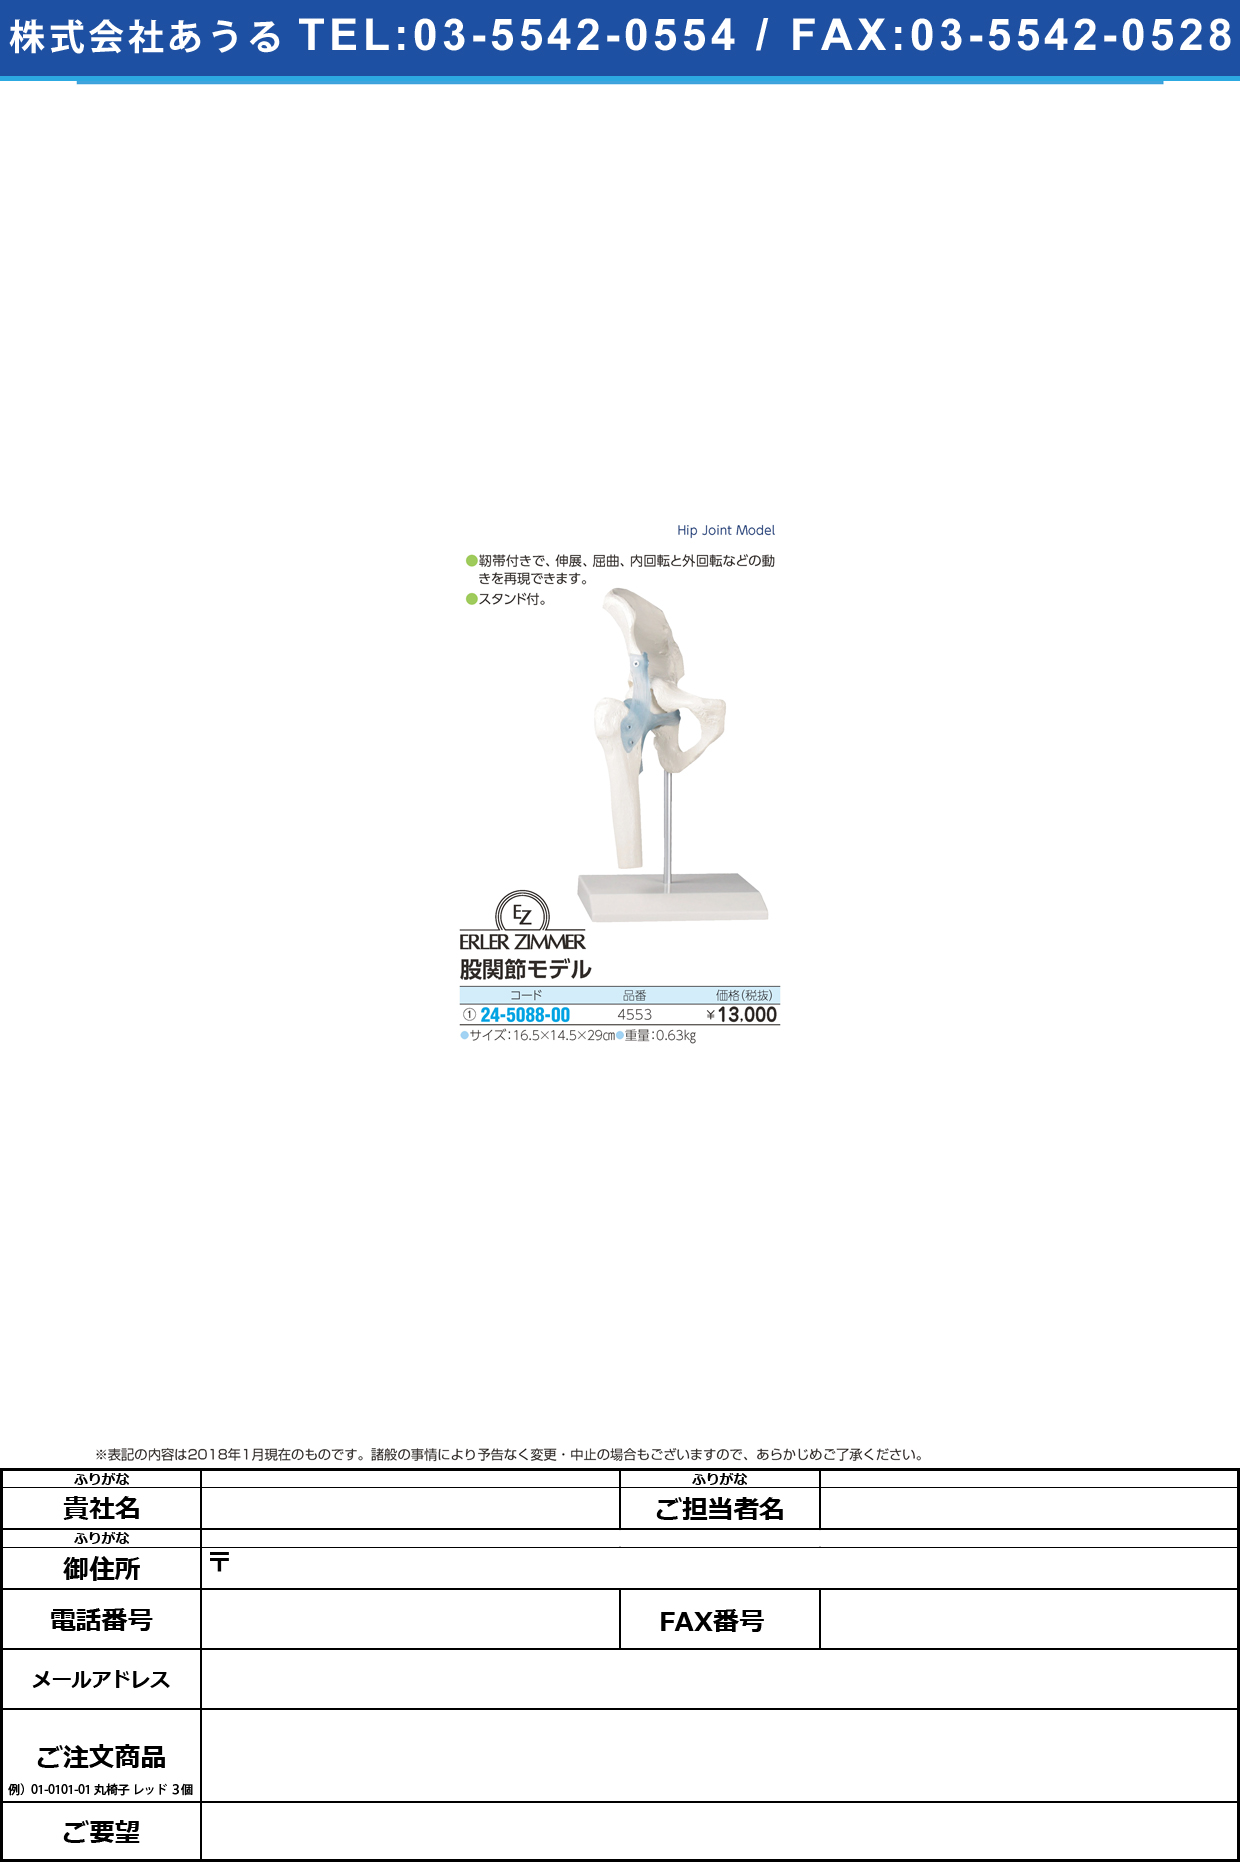 (24-5088-00)股間接モデル 4553 ﾏﾀｶﾝｾﾂﾓﾃﾞﾙ(エルラージーマー社)【1個単位】【2018年カタログ商品】